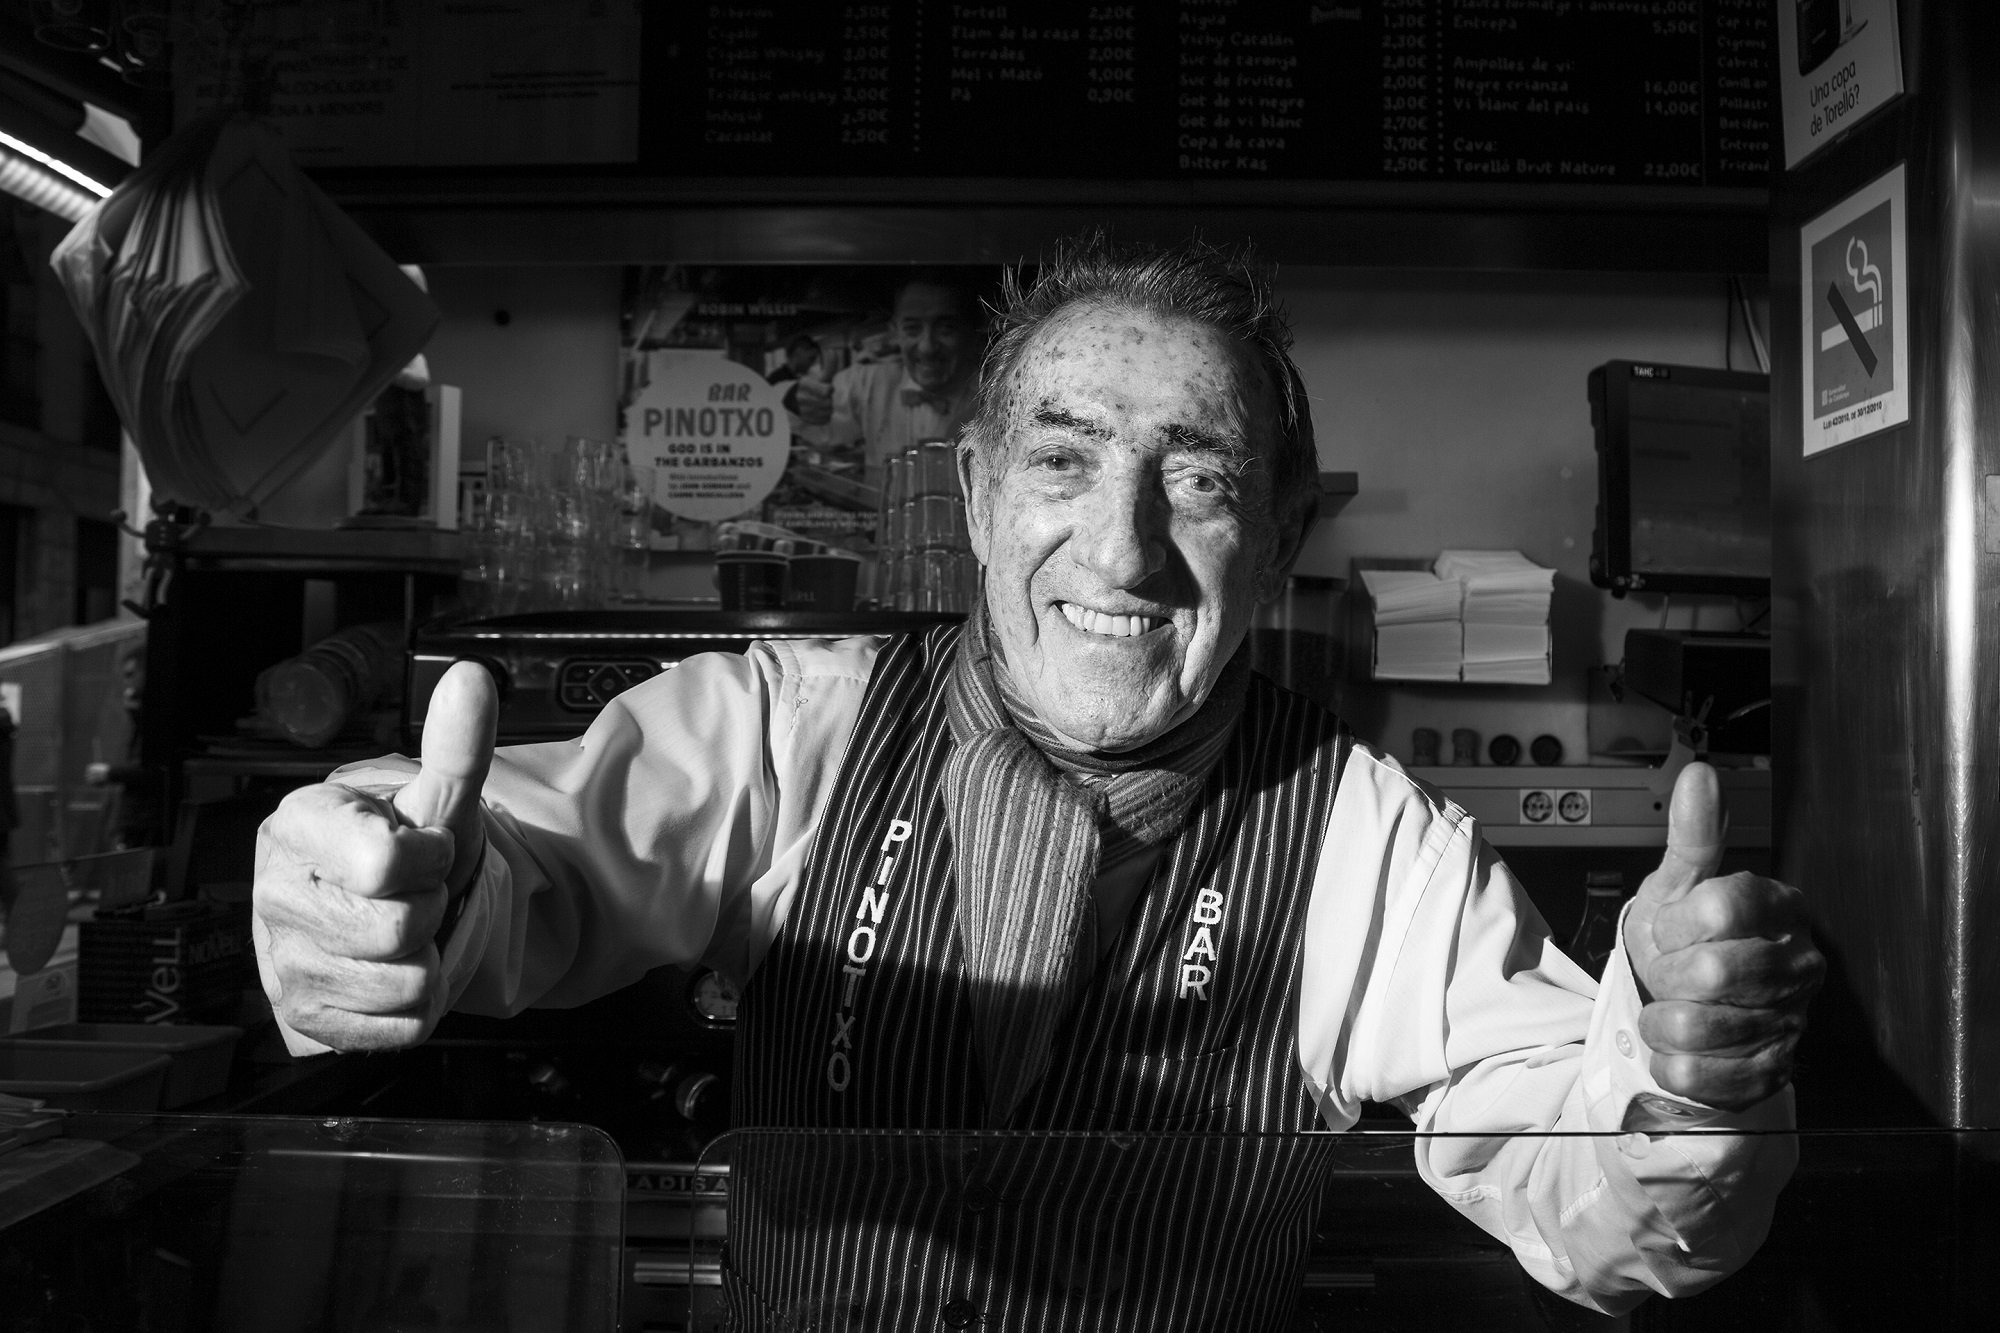 Marc Ribas llora por Pinotxo: emotivísima foto en La Boqueria de dos leyendas de la gastronomía catalana